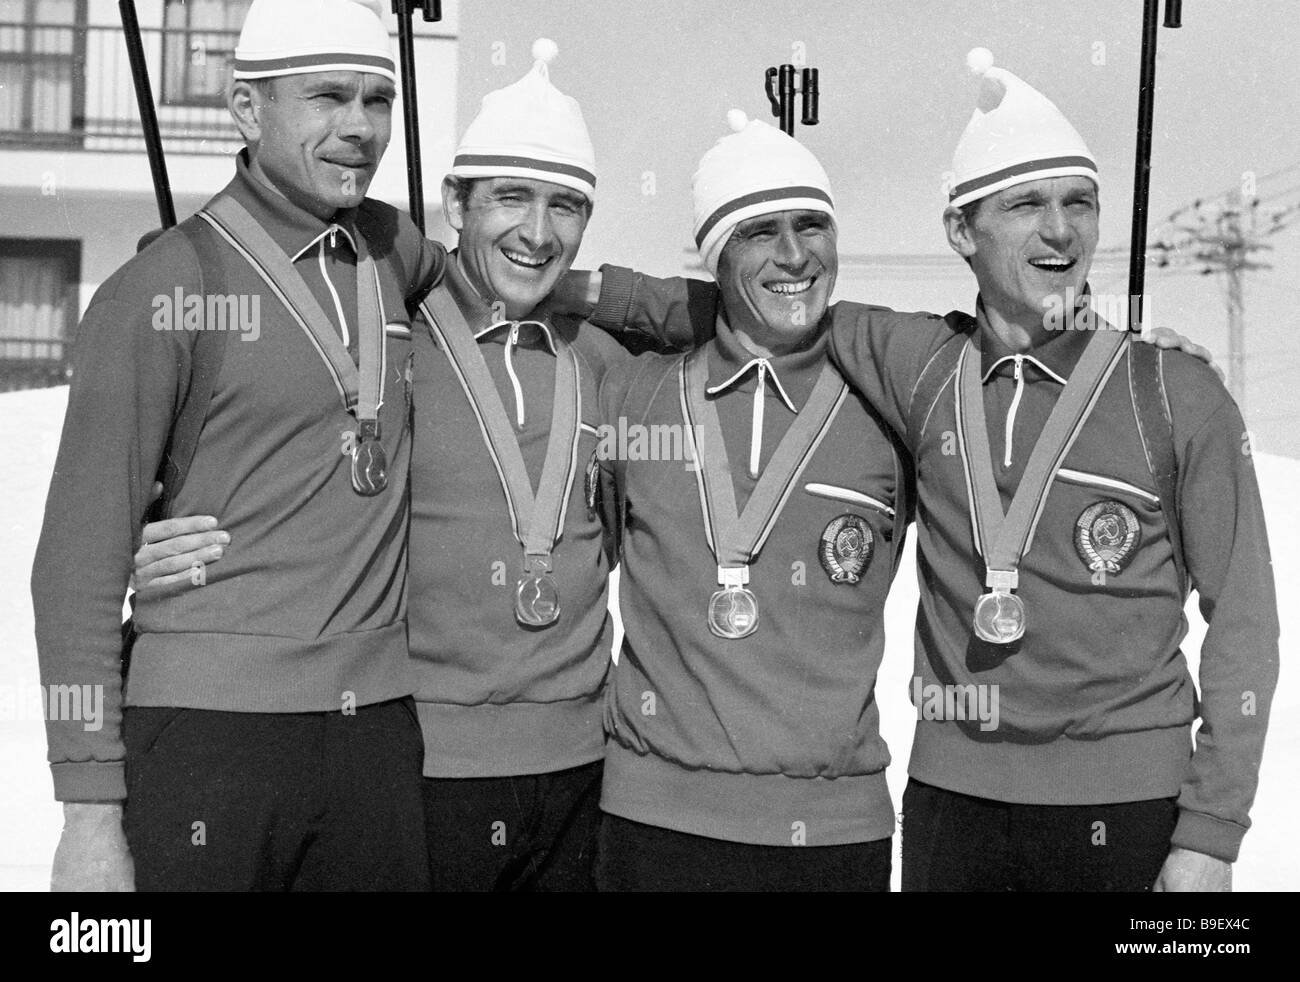 Олимпийские чемпионы 1972. Тихонов биатлон Инсбрук 1976.